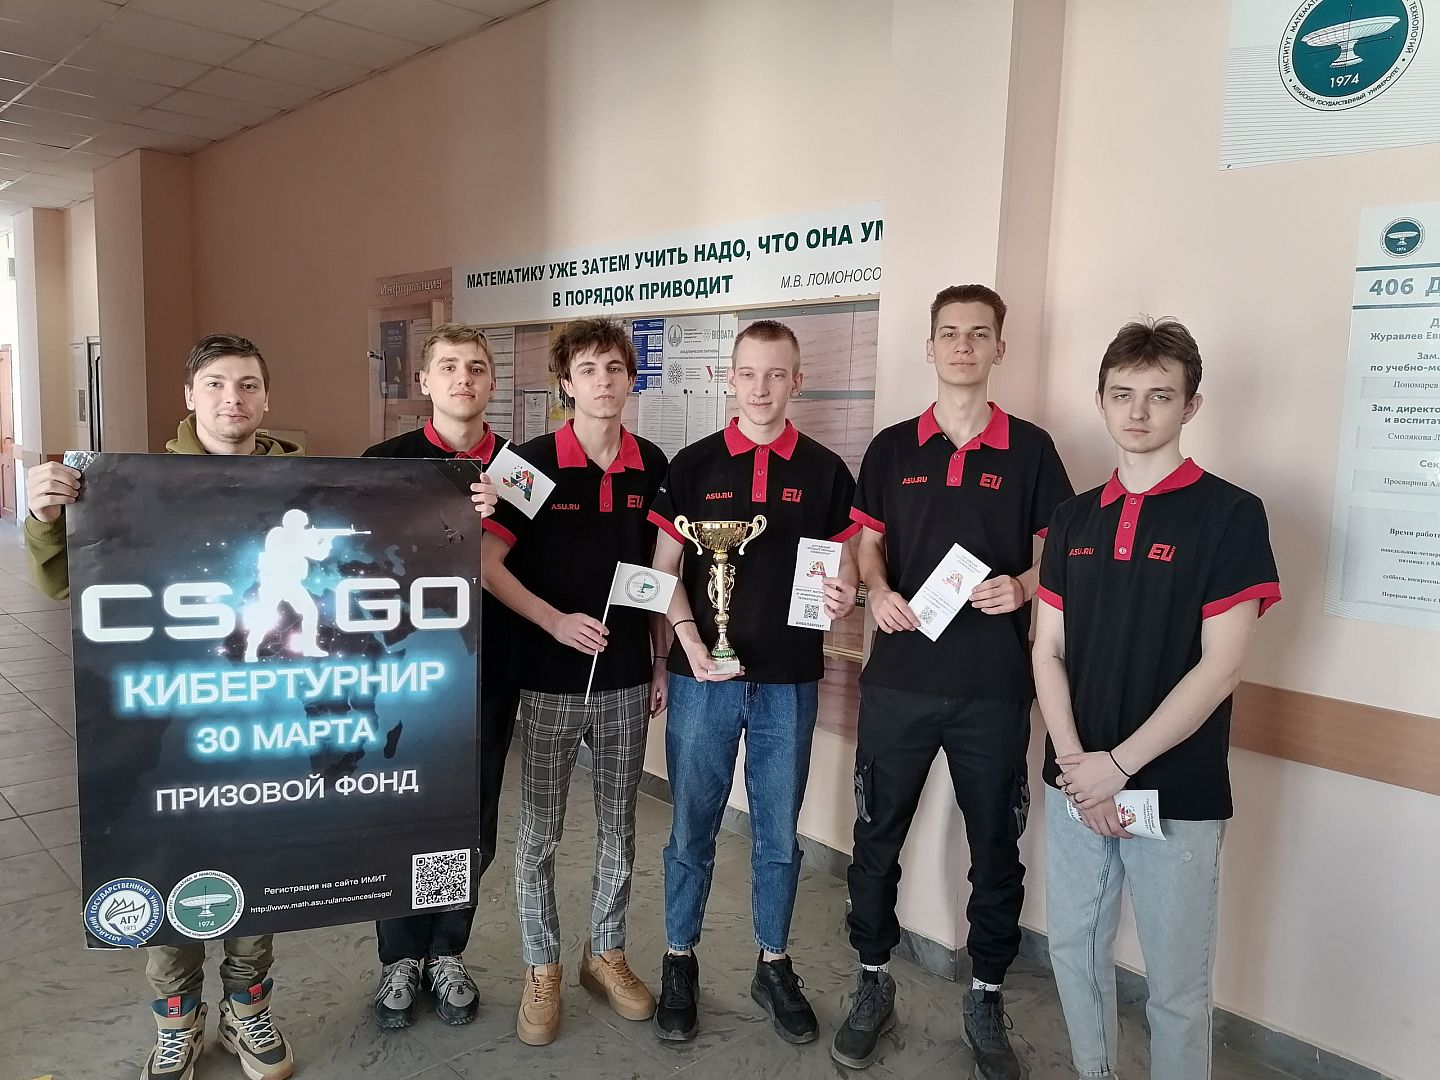 В Алтайском государственном университете состоялся турнир по CS:GO